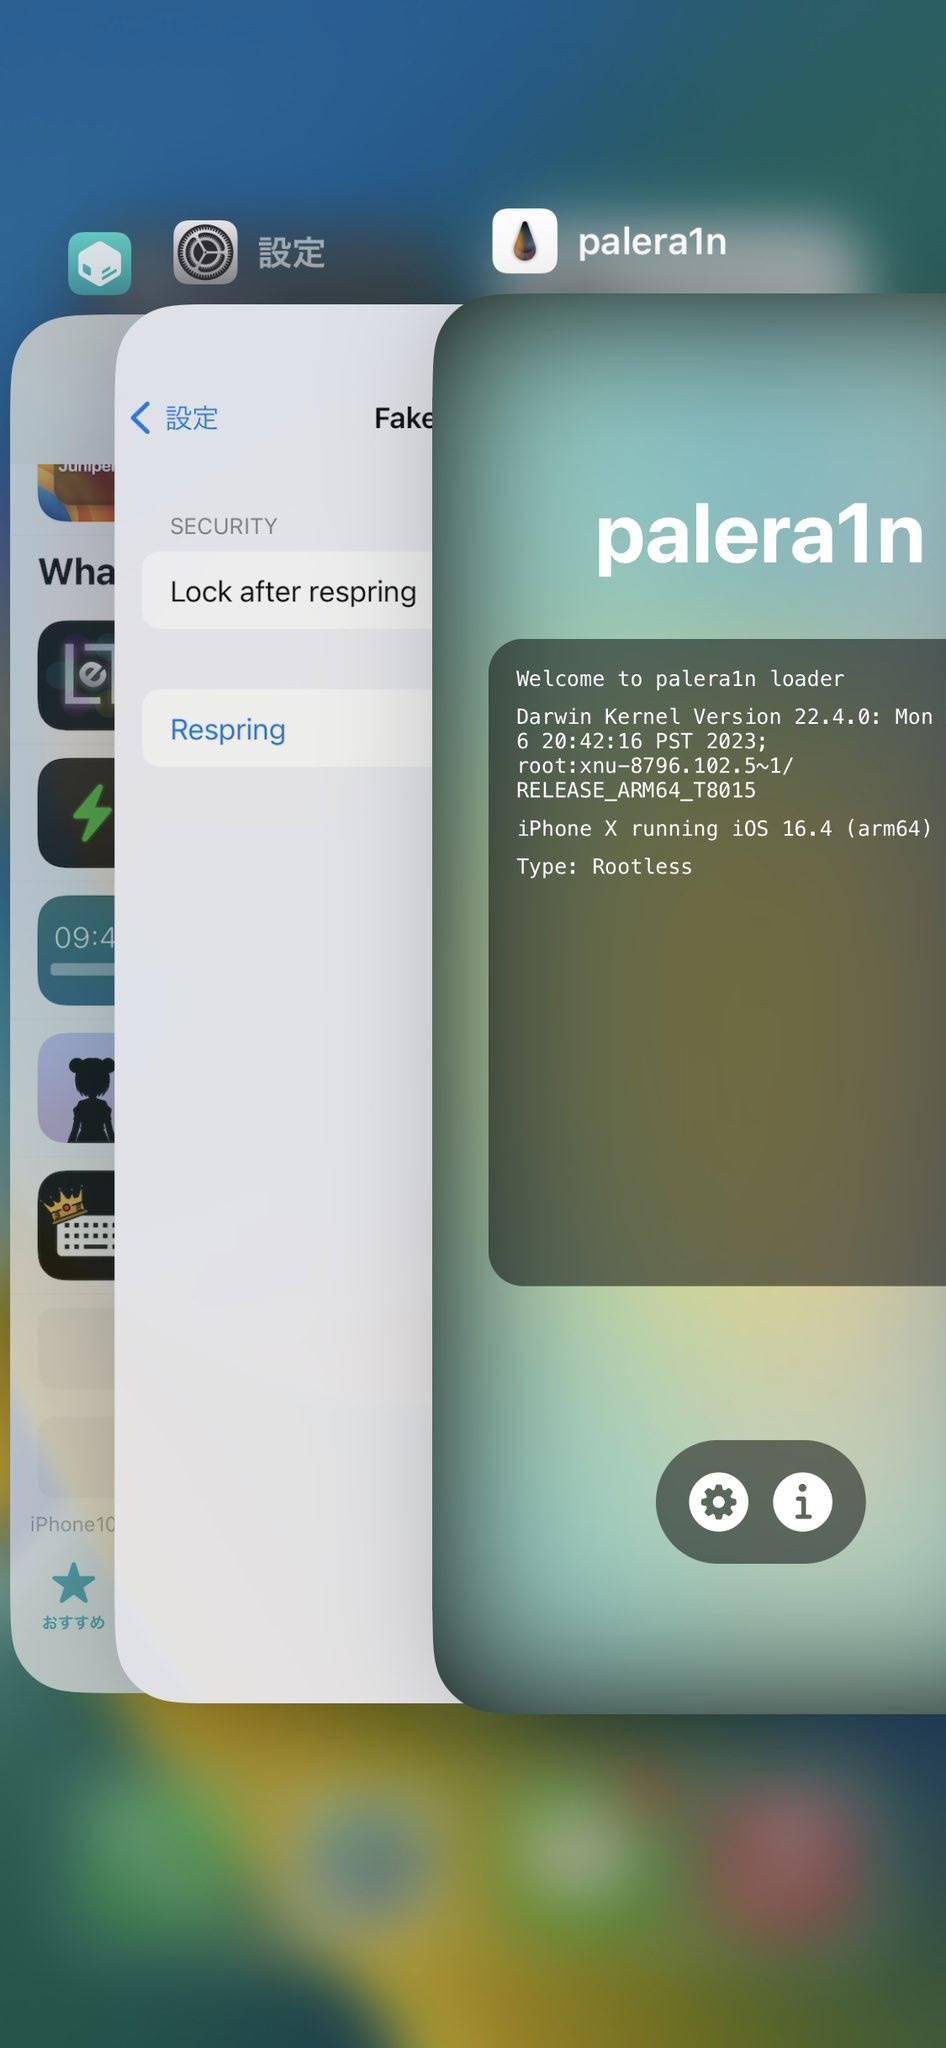 palera1n团队预告新版本即将支持iOS 16.4系统越狱